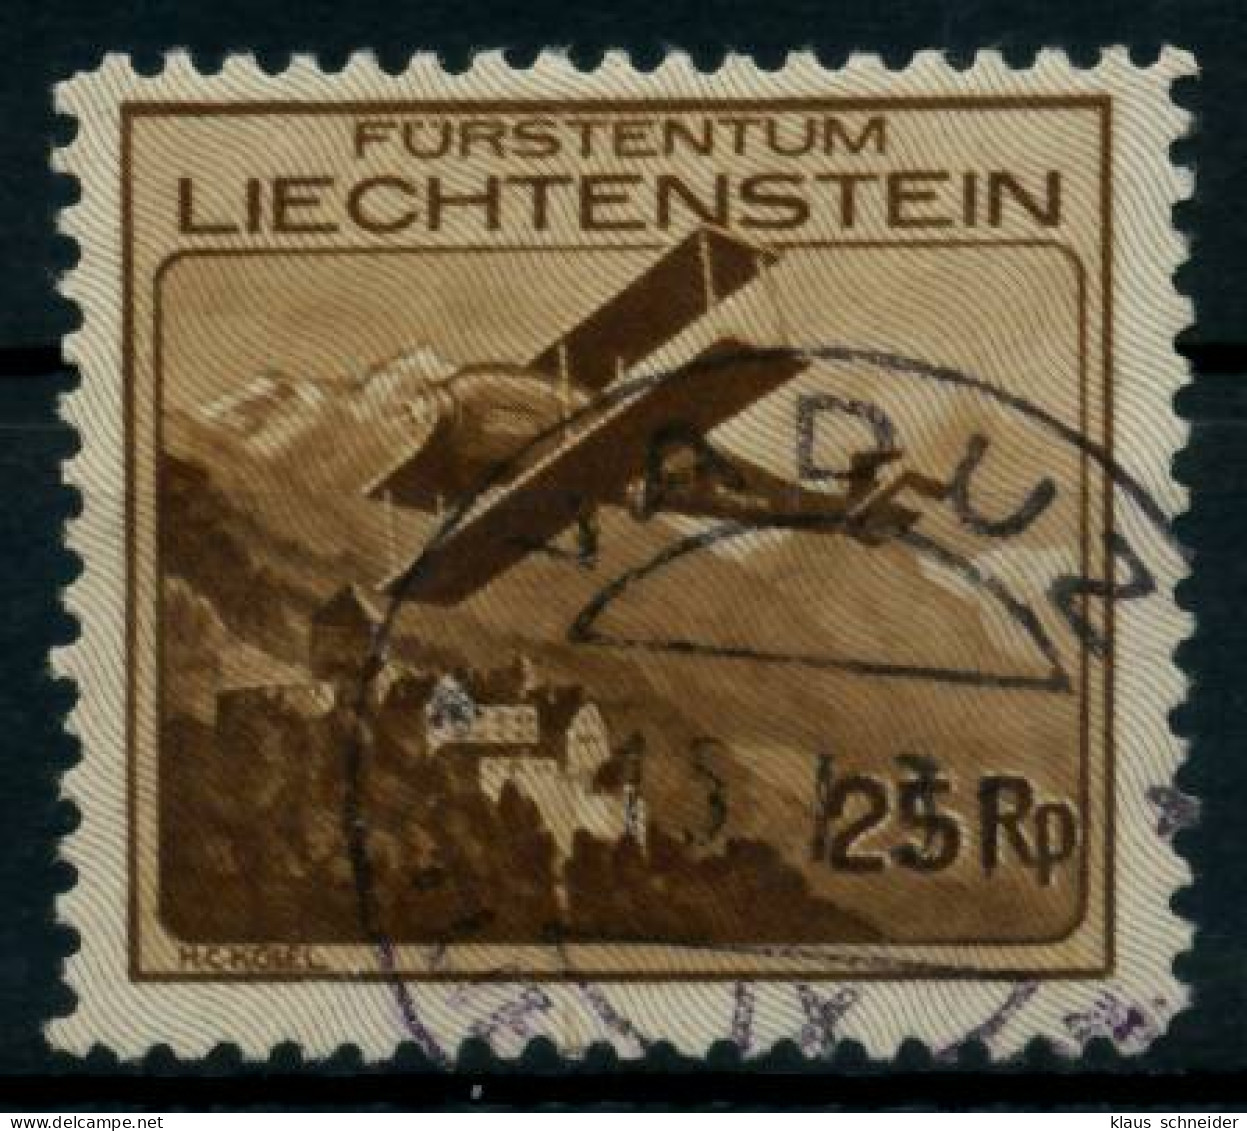 LIECHTENSTEIN 1930 Nr 110 Zentrisch Gestempelt X6A8DDA - Used Stamps